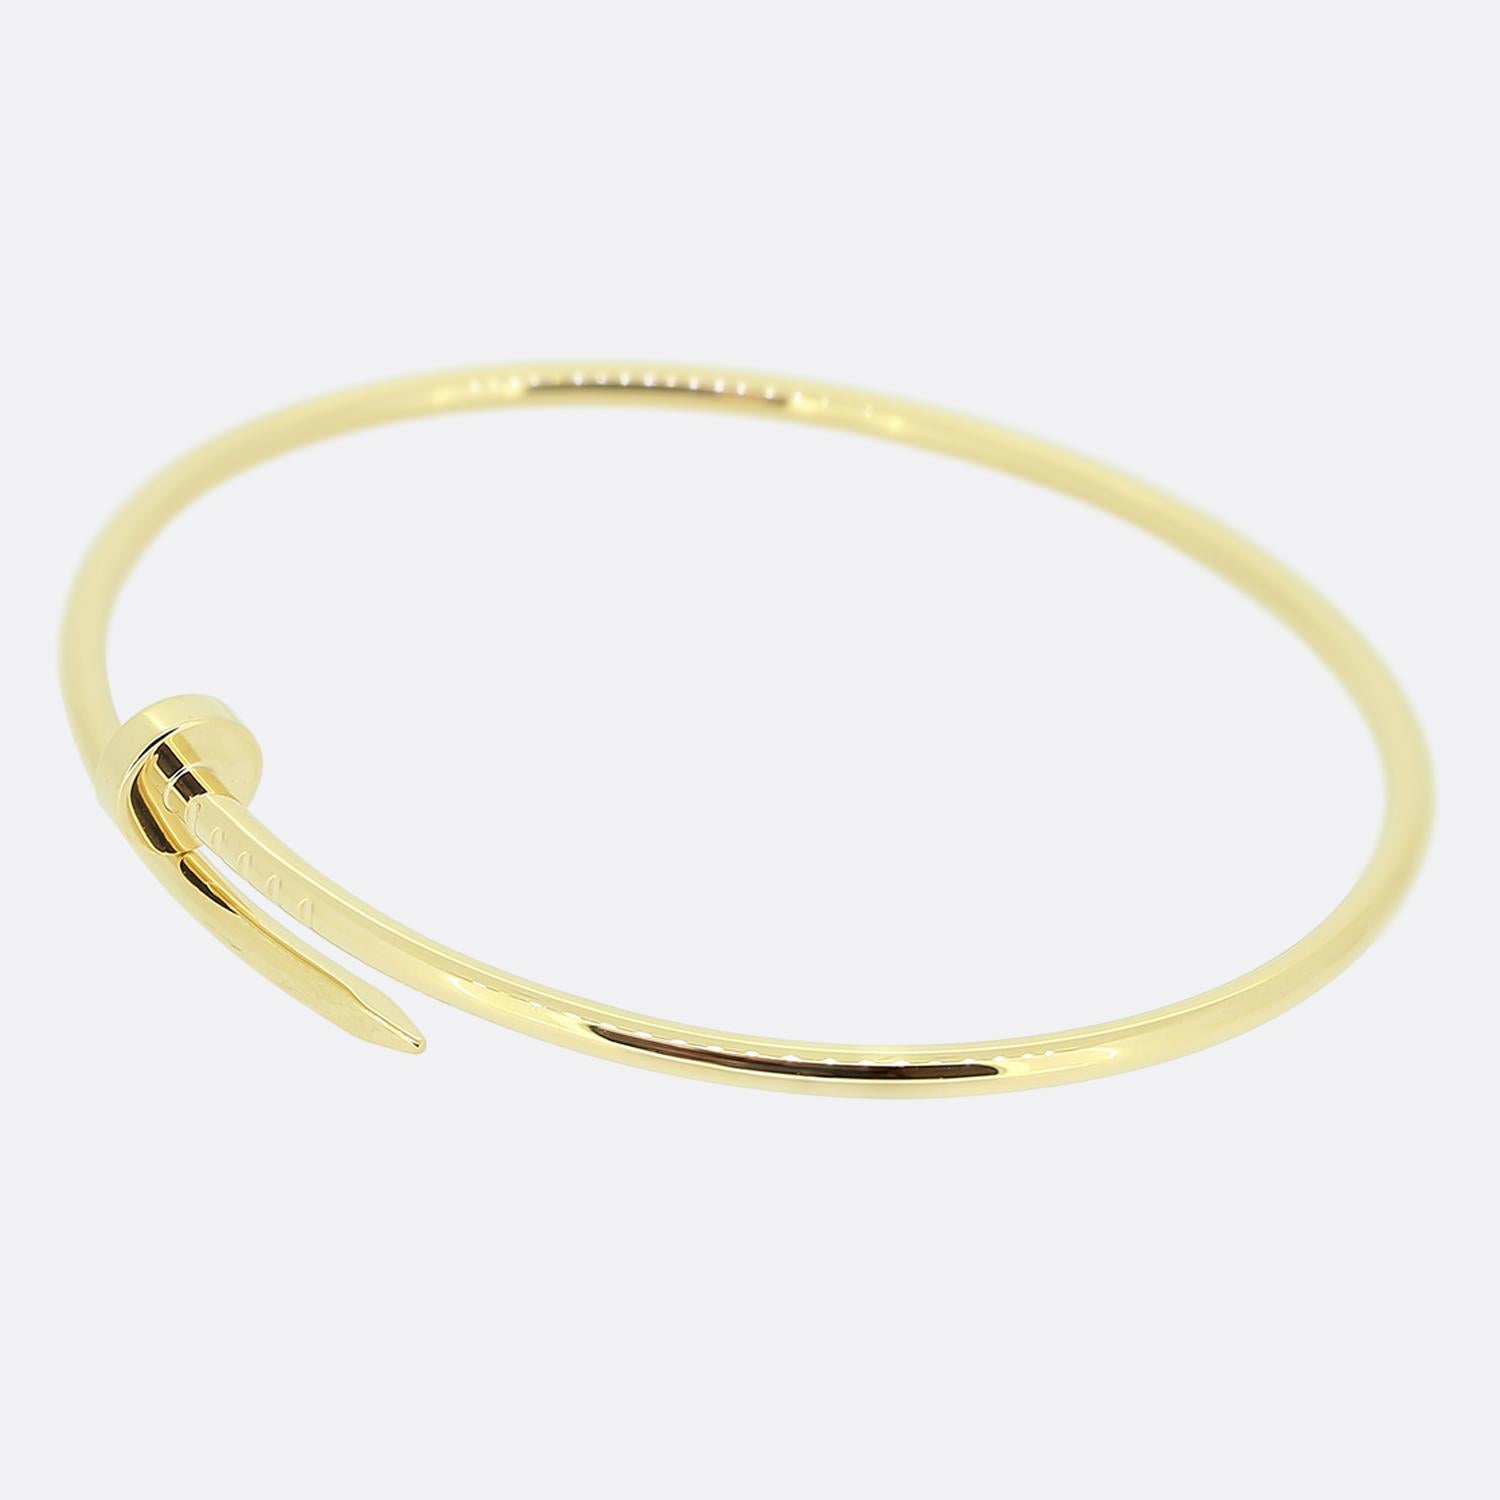 Nous avons ici un bracelet en or jaune 18ct de la maison de joaillerie de luxe Cartier. Cette pièce fait partie de la collection 